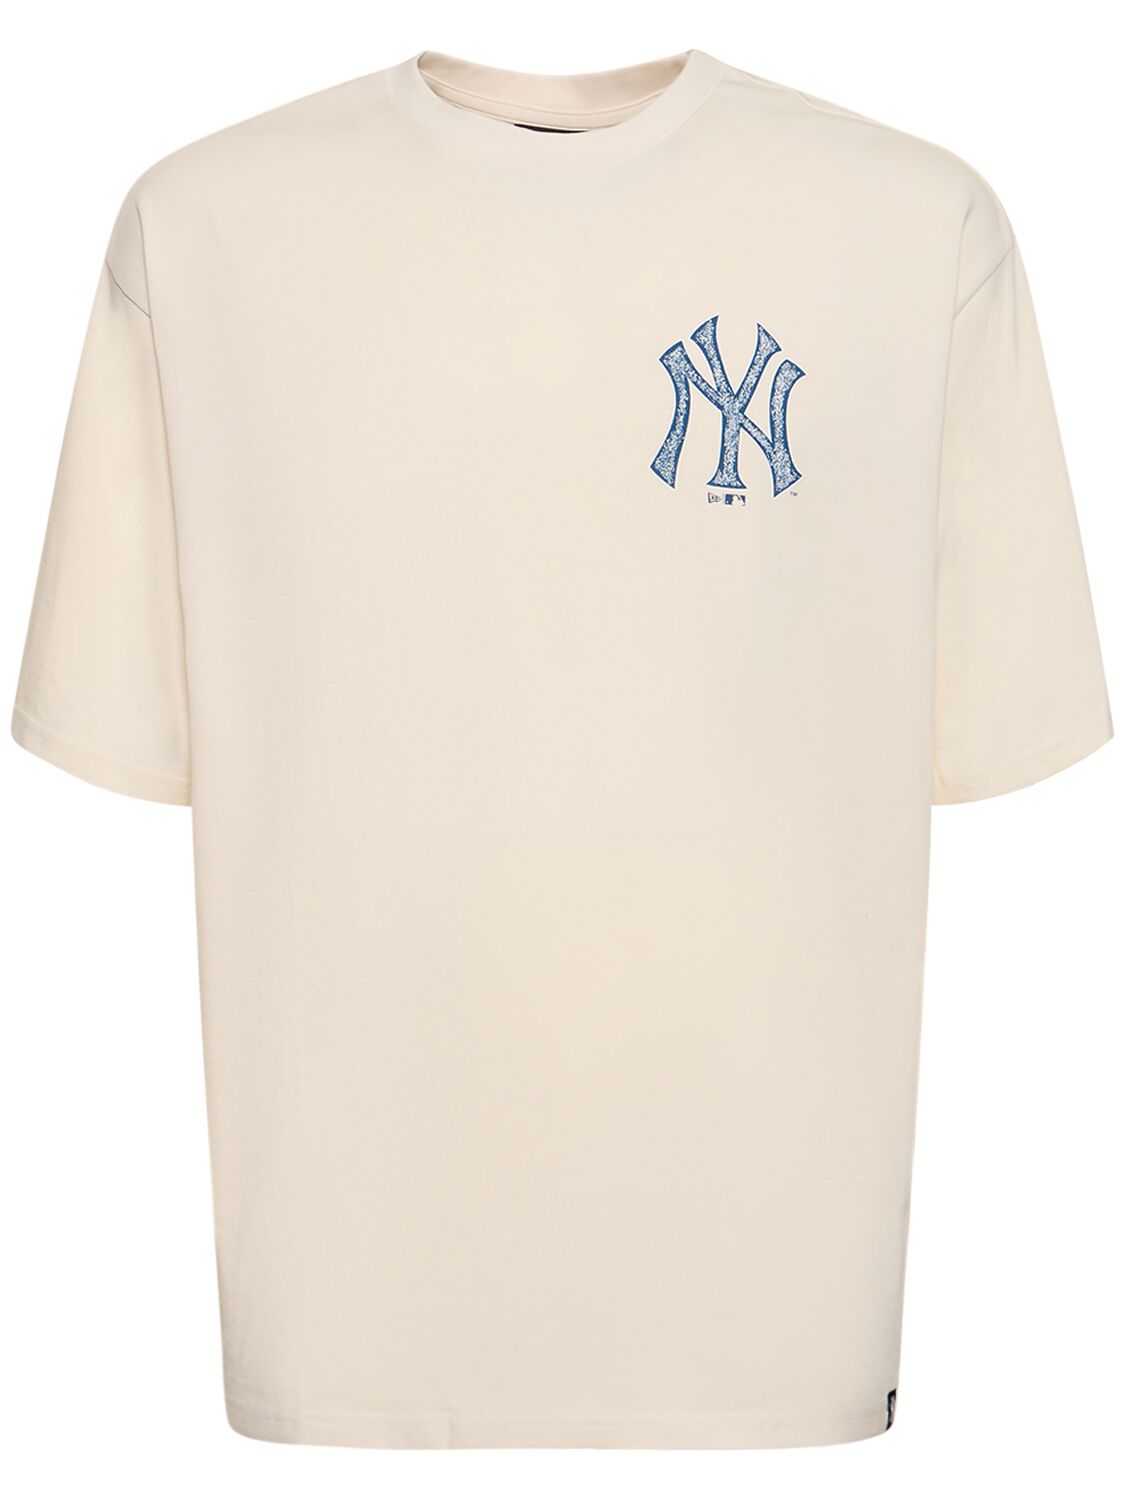 Ny Yankees Printed T-shirt